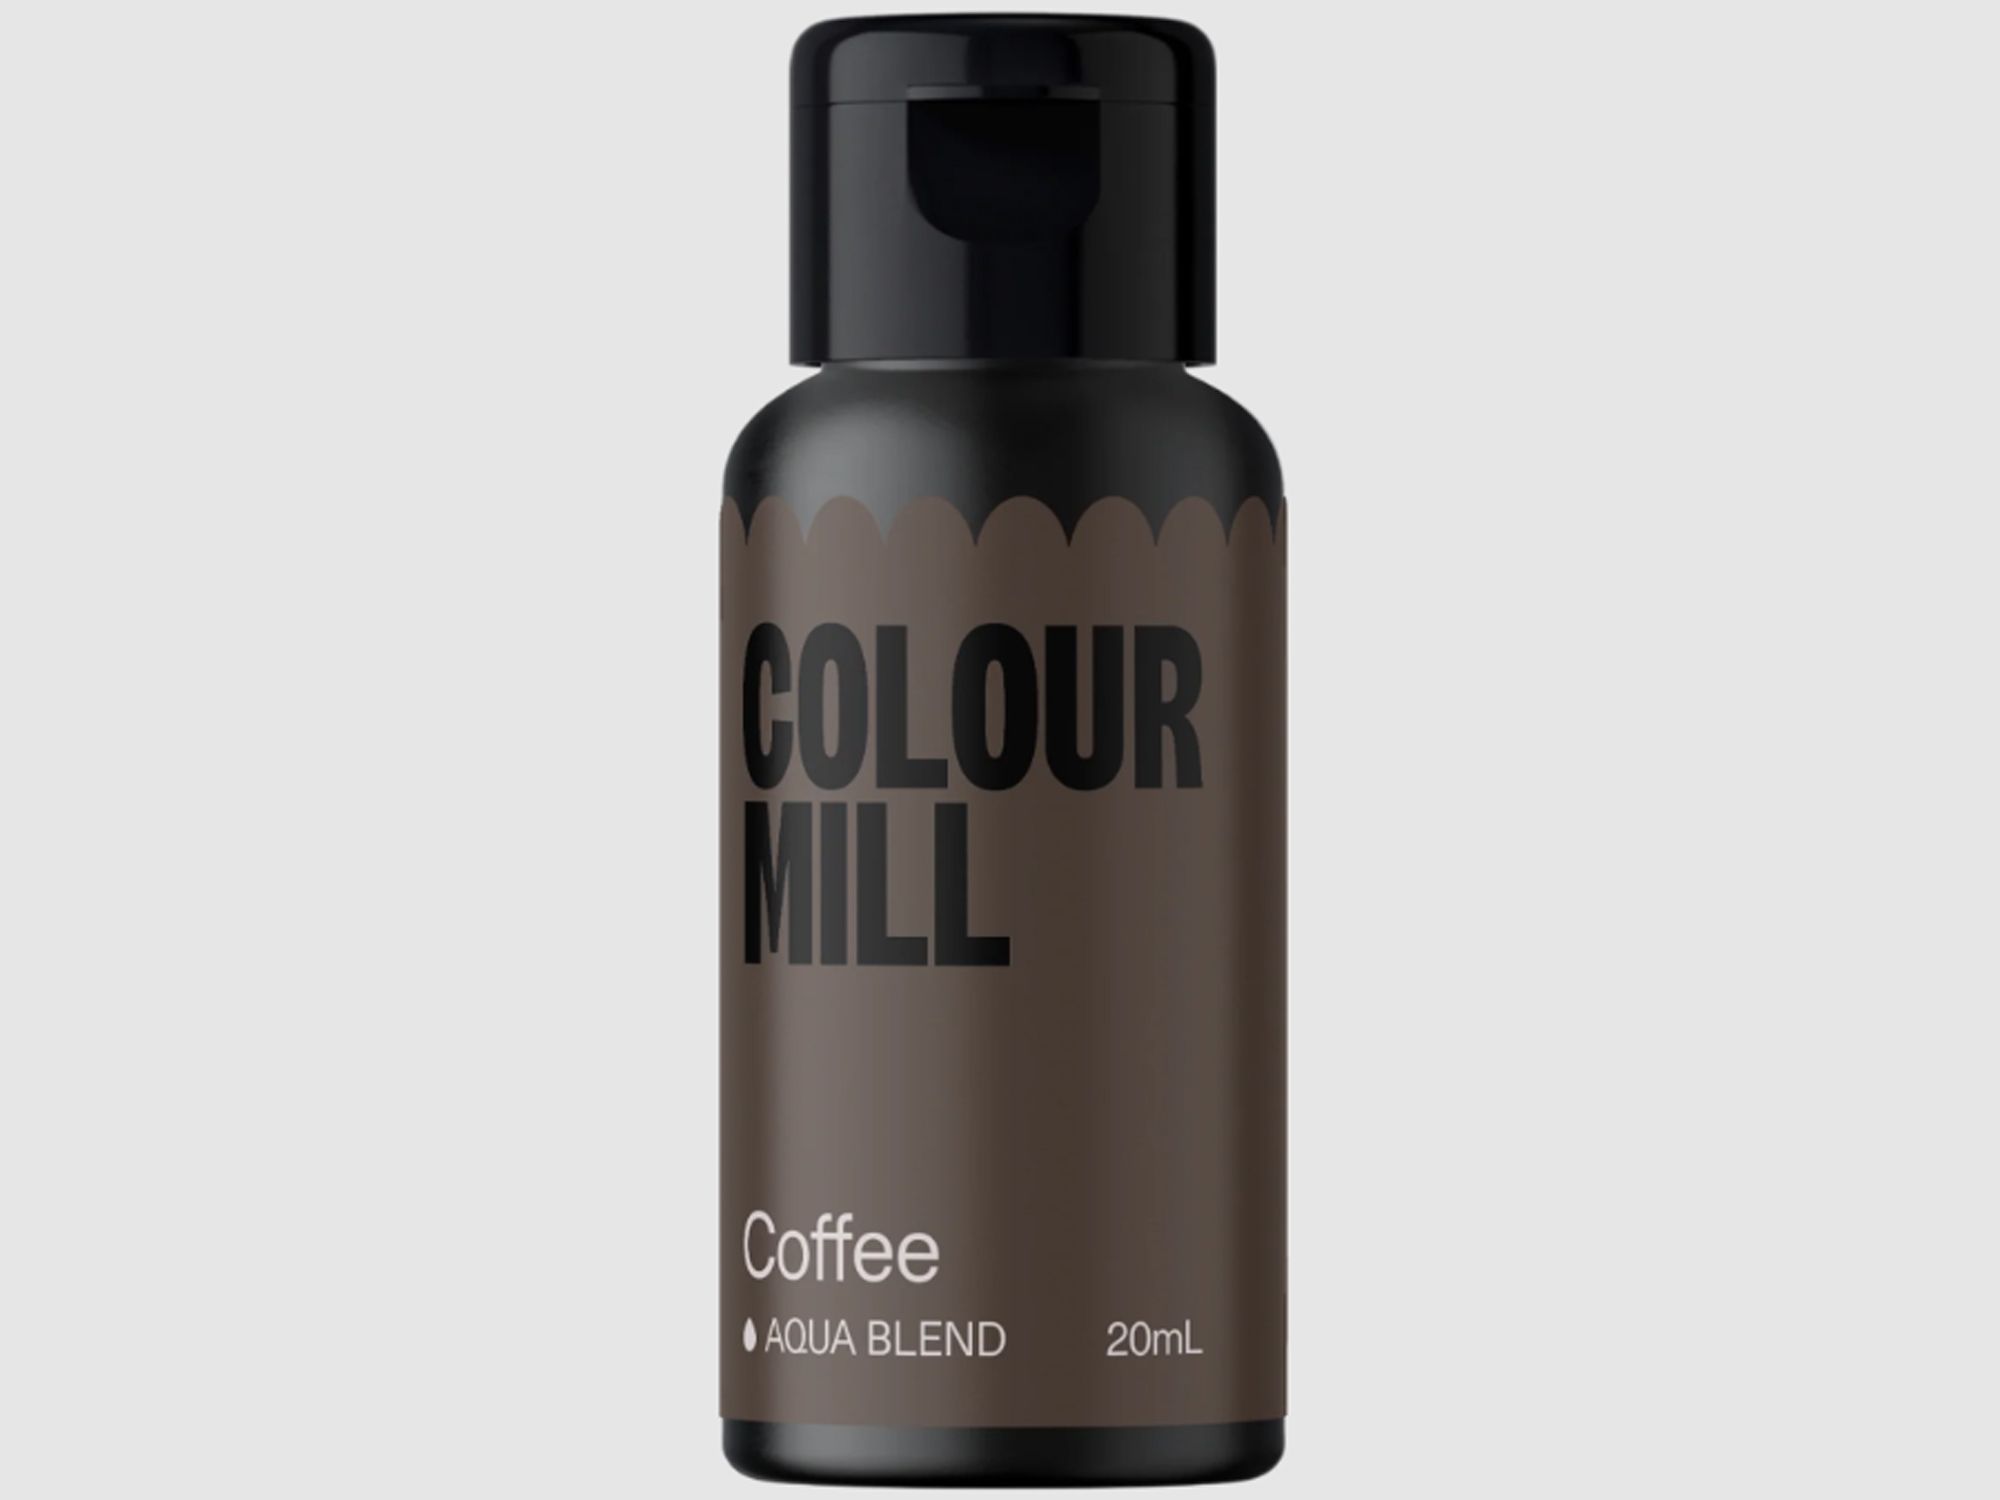 Colour Mill Coffee (Aqua Blend) 20ml